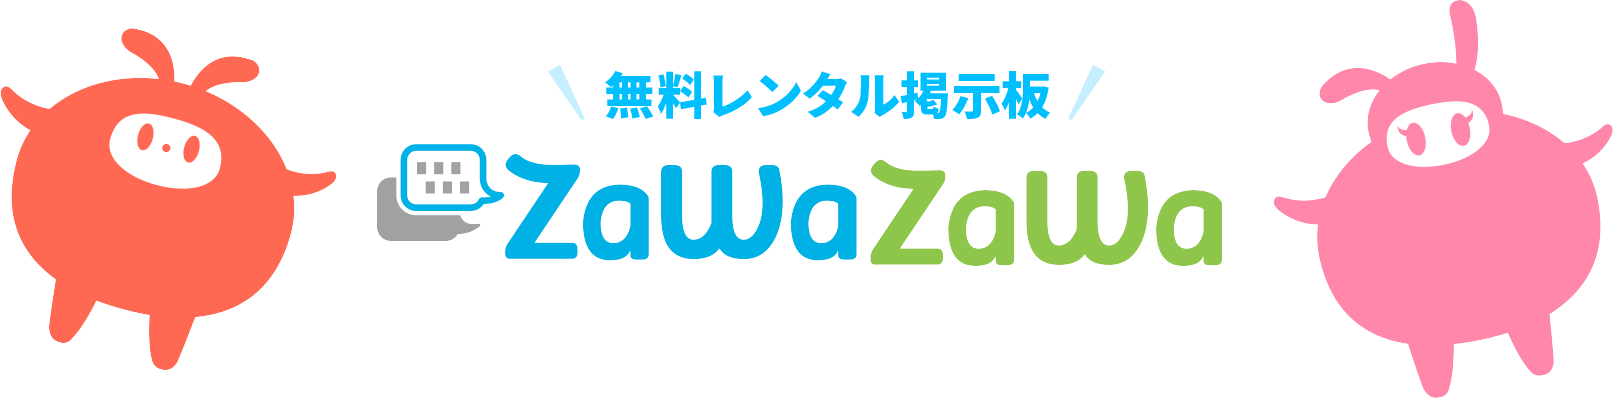 無料レンタル掲示板 zawazawa